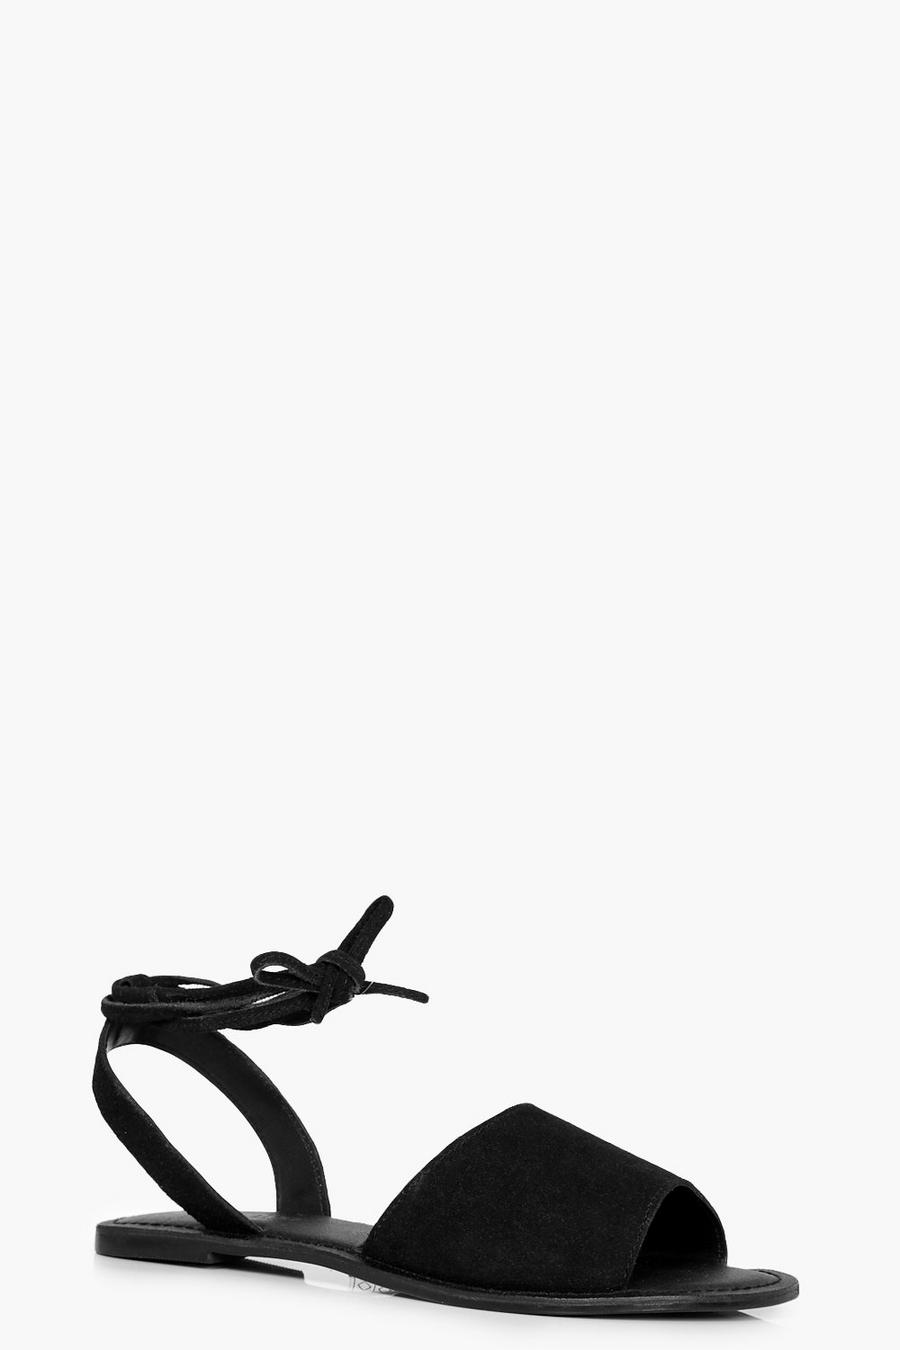 Sandalias de cuero con punta abierta y tira cruzada en tobillo image number 1